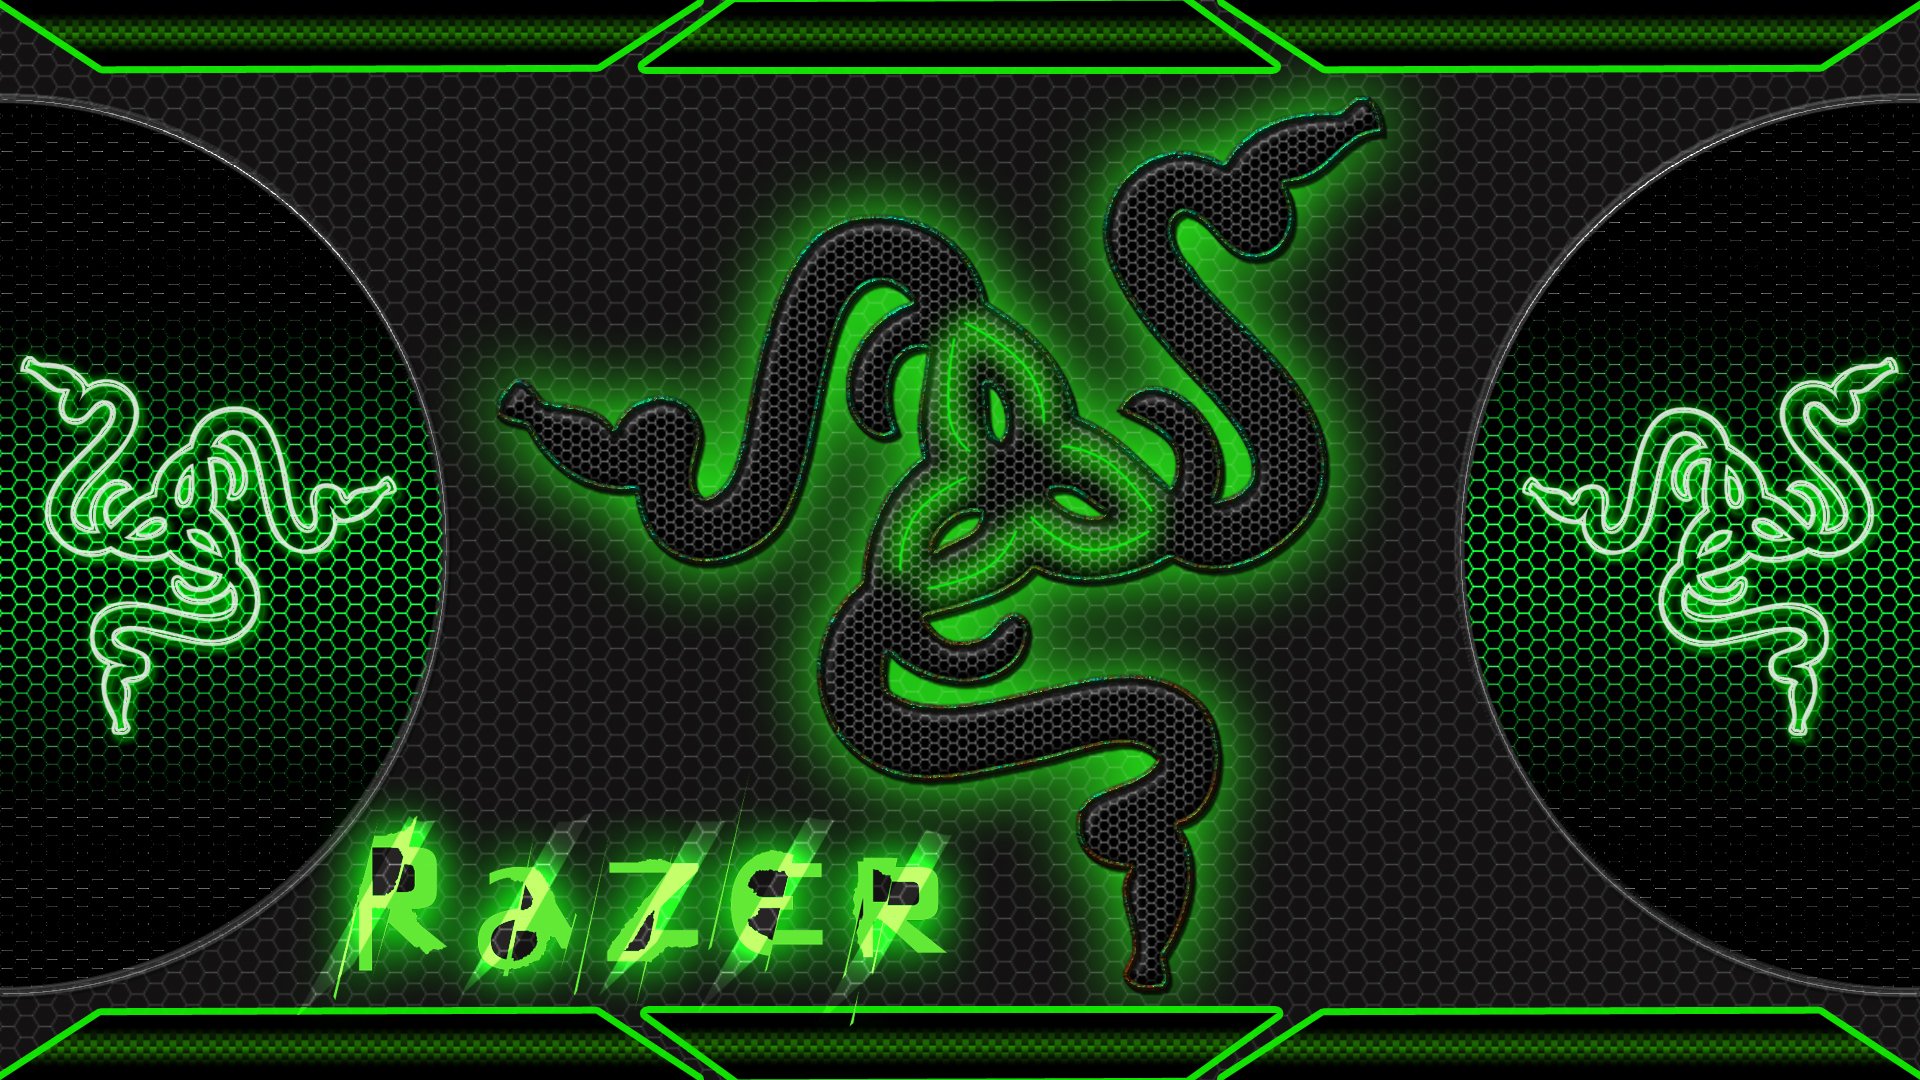 Razer Gaming Puter Game Wallpaper